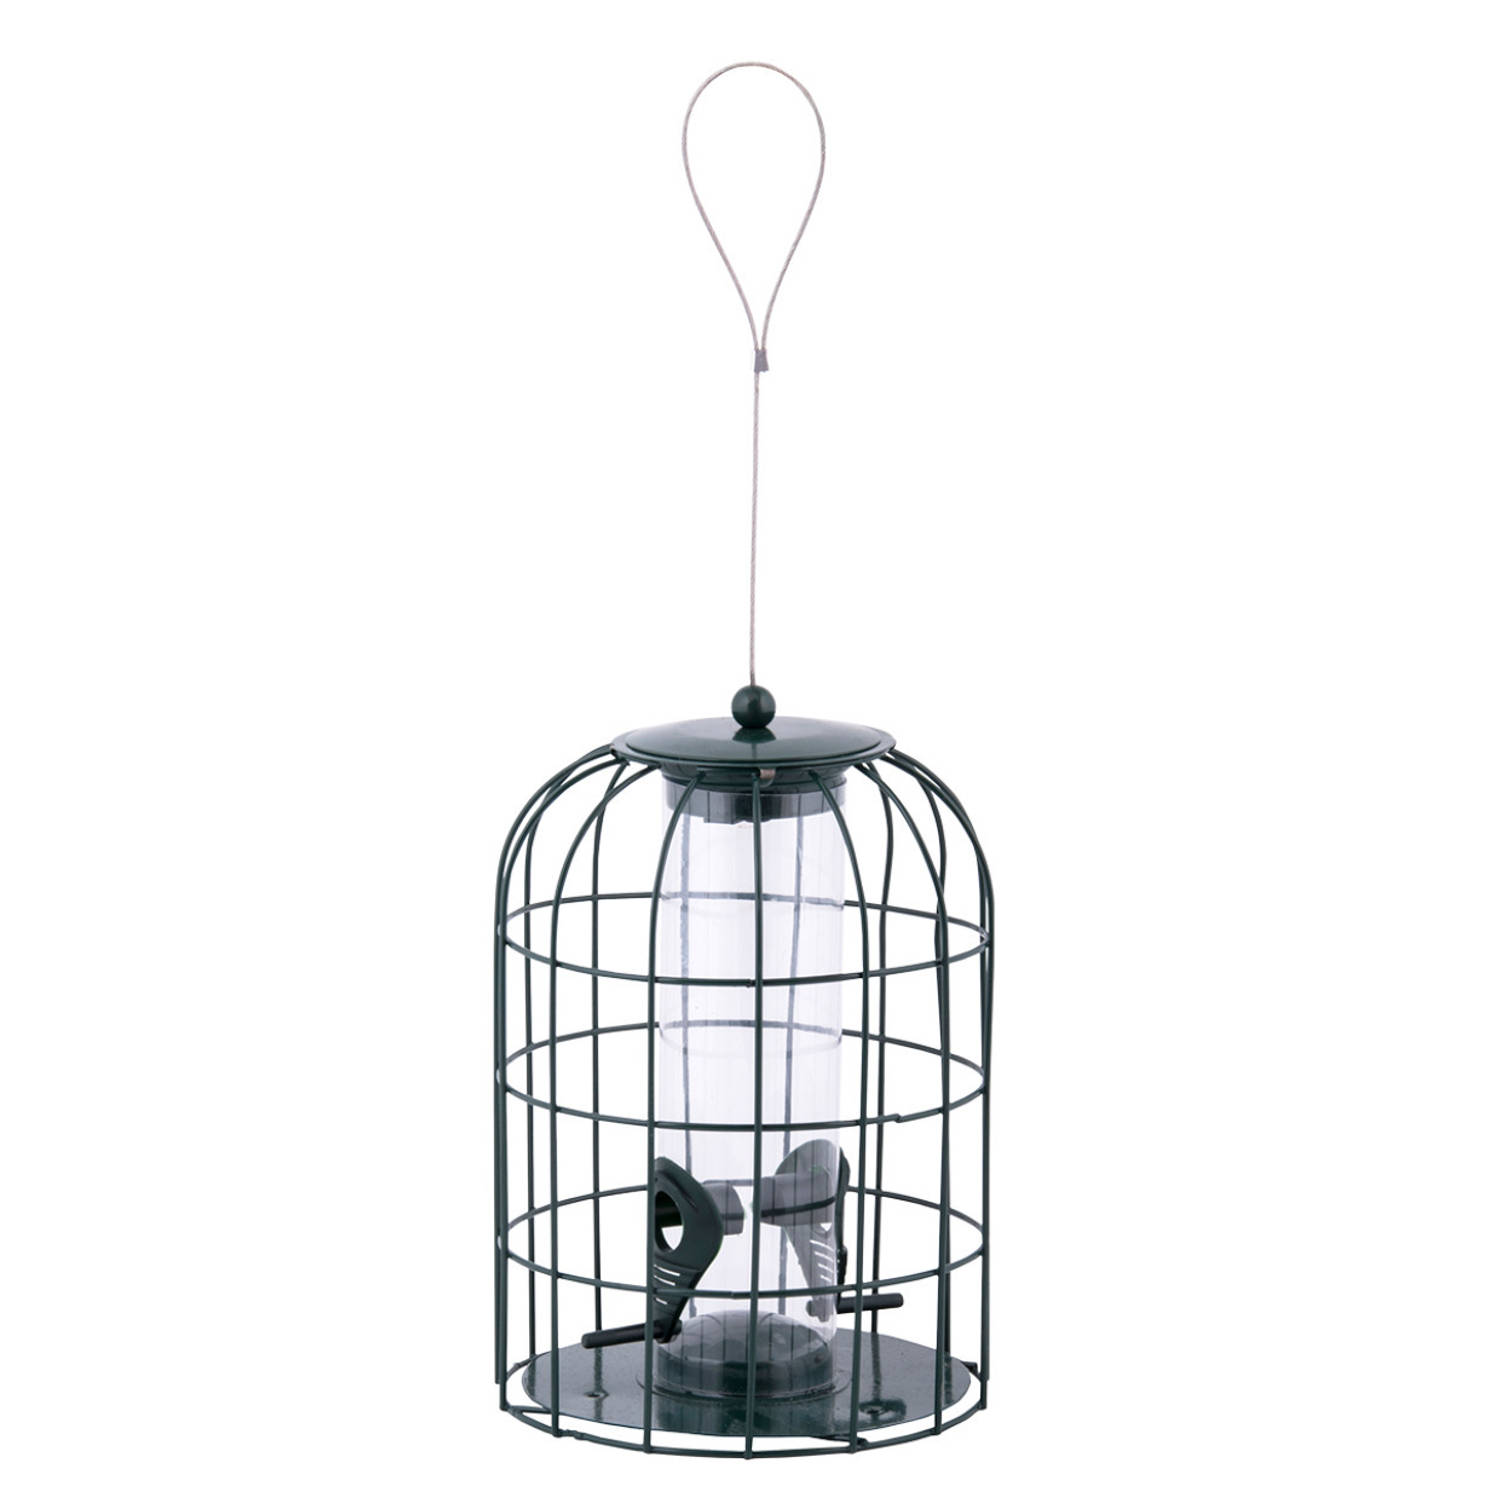 Merkloos Metalen Vogel Voedersilo/voederkooi 26 Cm Mussen/mezen Kleine Vogeltjes Winter Voeder Huisjes online kopen